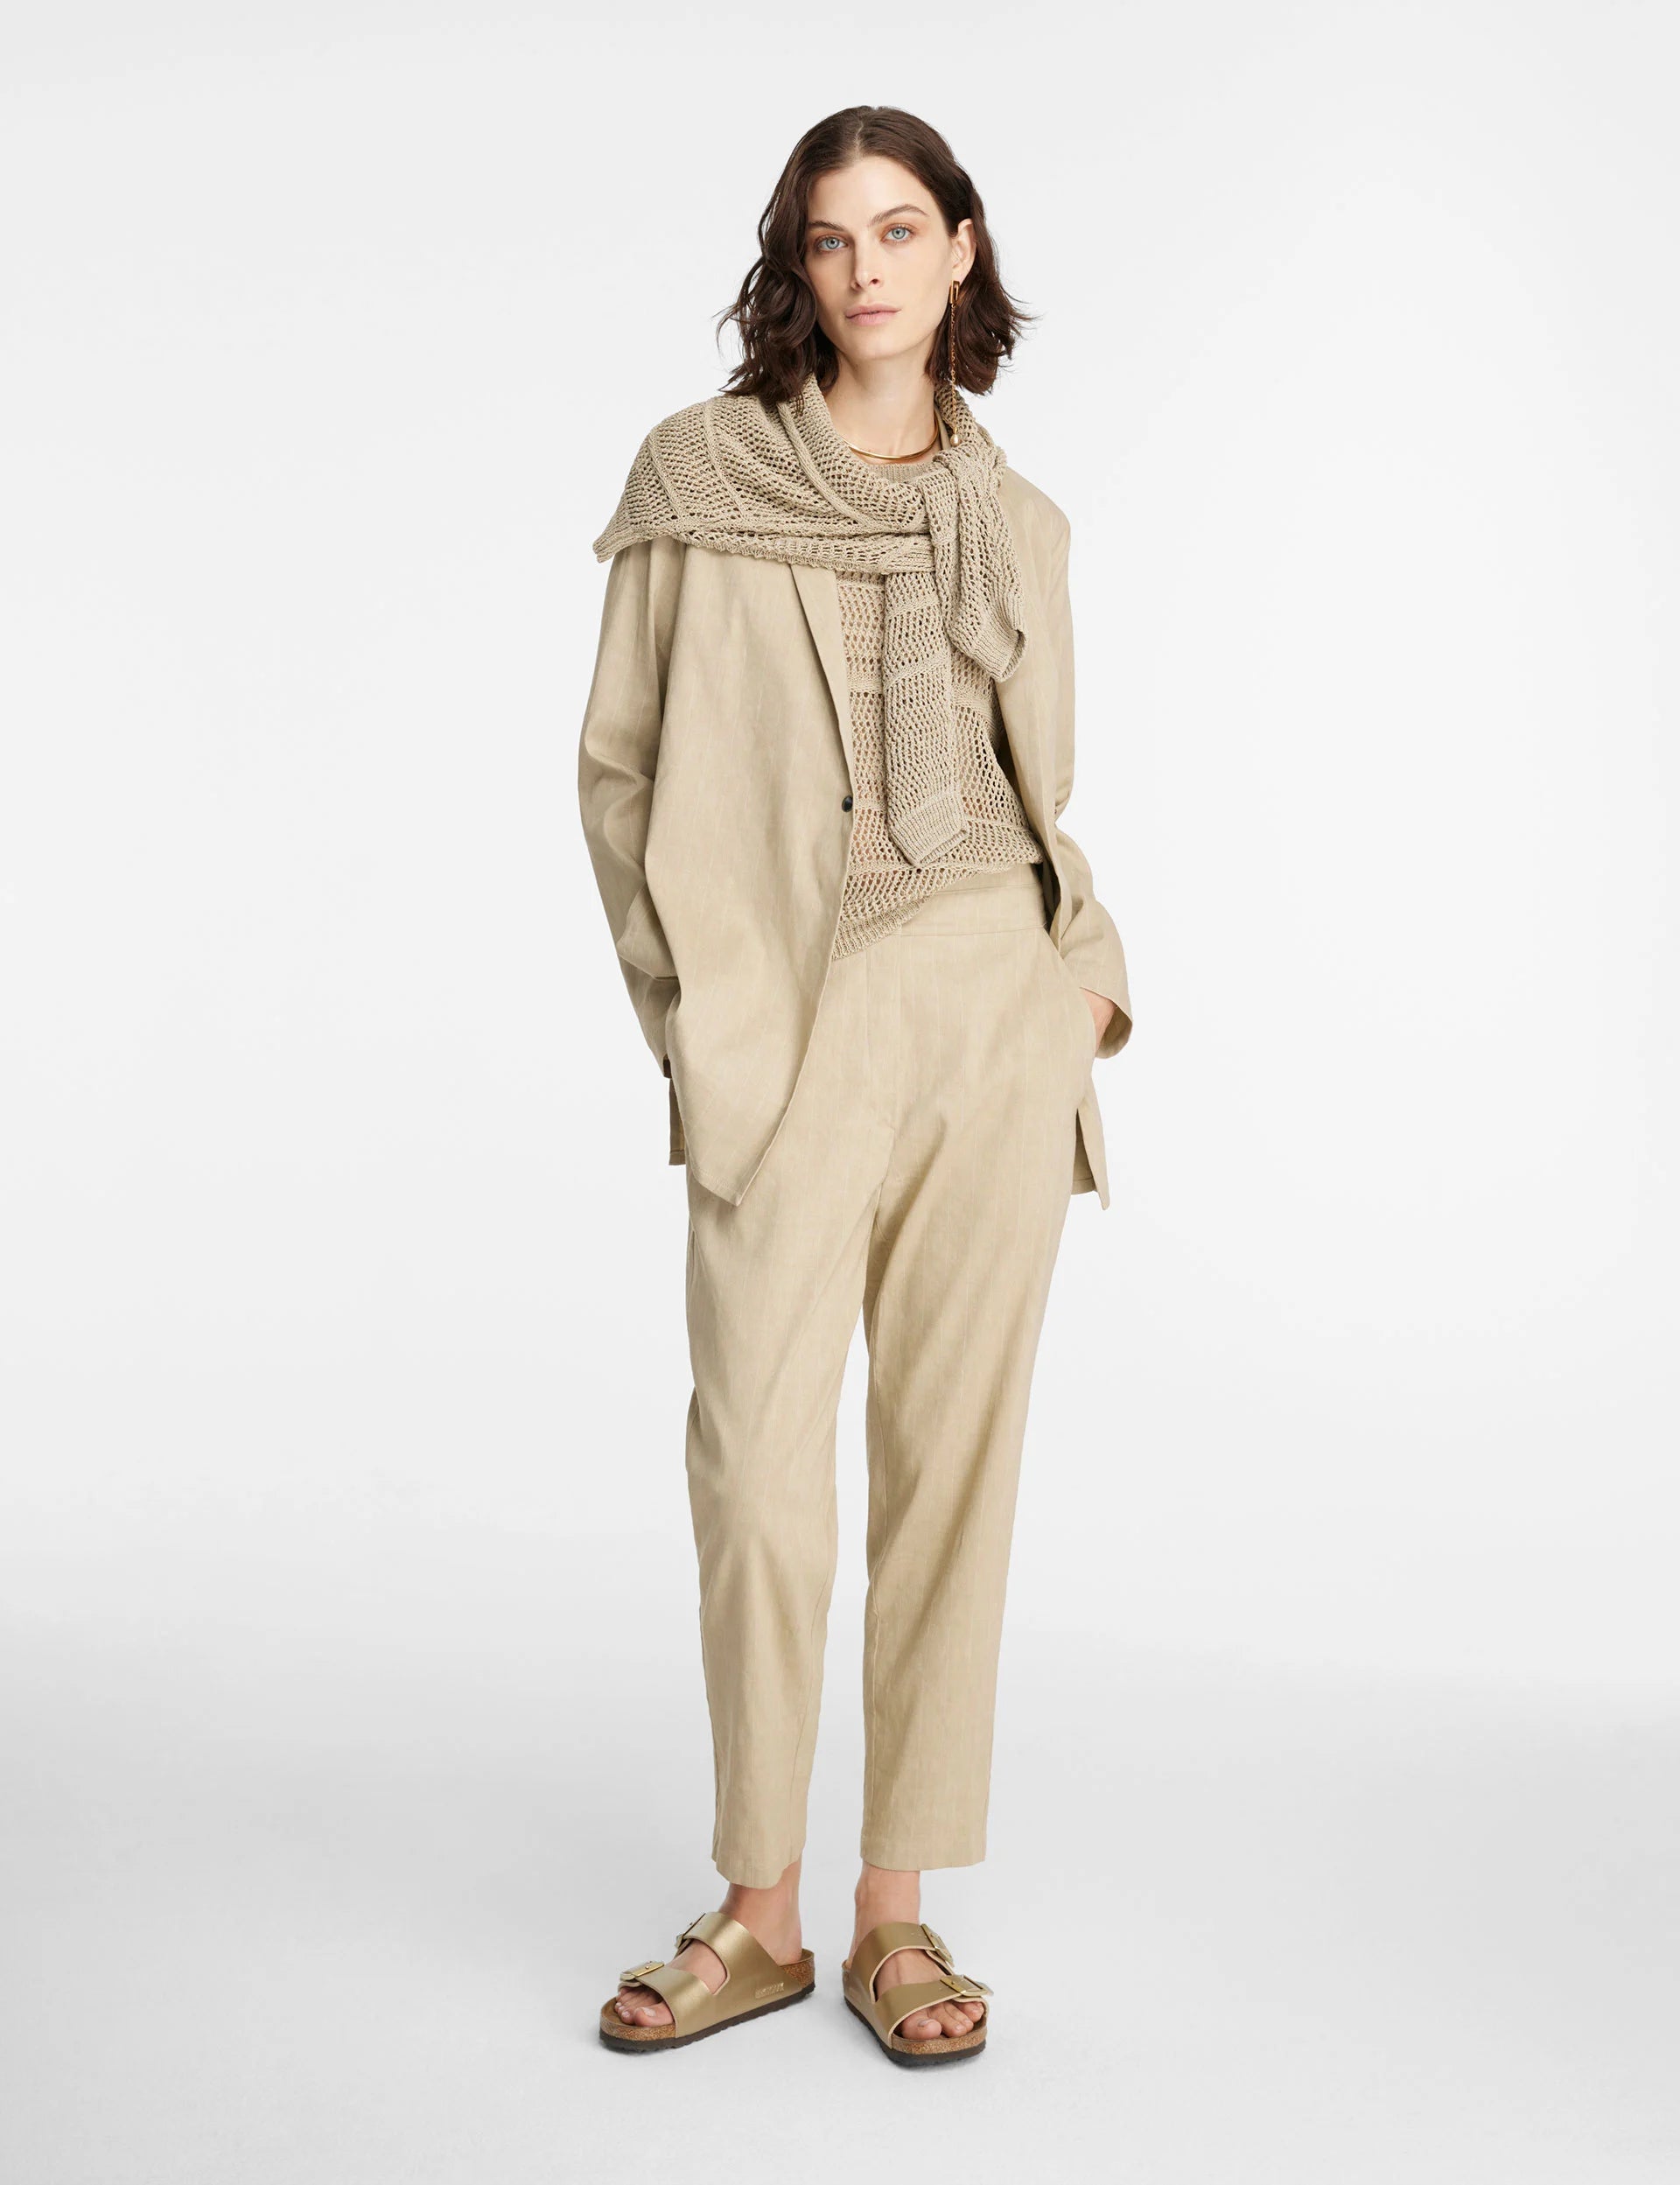 Sarah Pacini Mesh Sweater with Cap Sleeve – Optionsforher